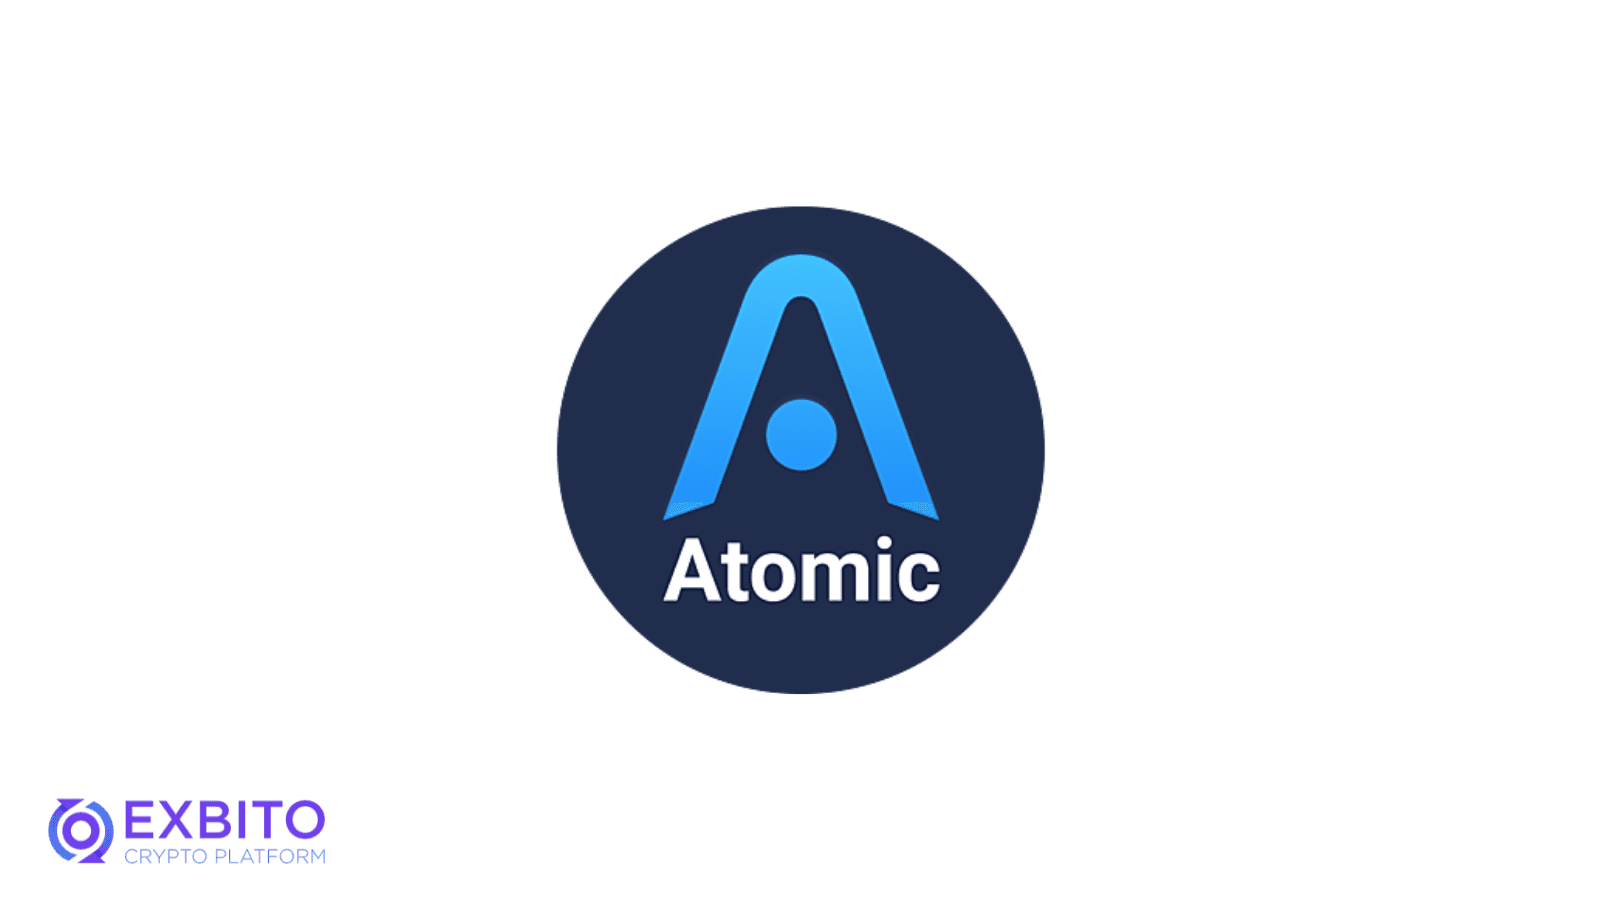 کیف پول اتمیک (Atomic)